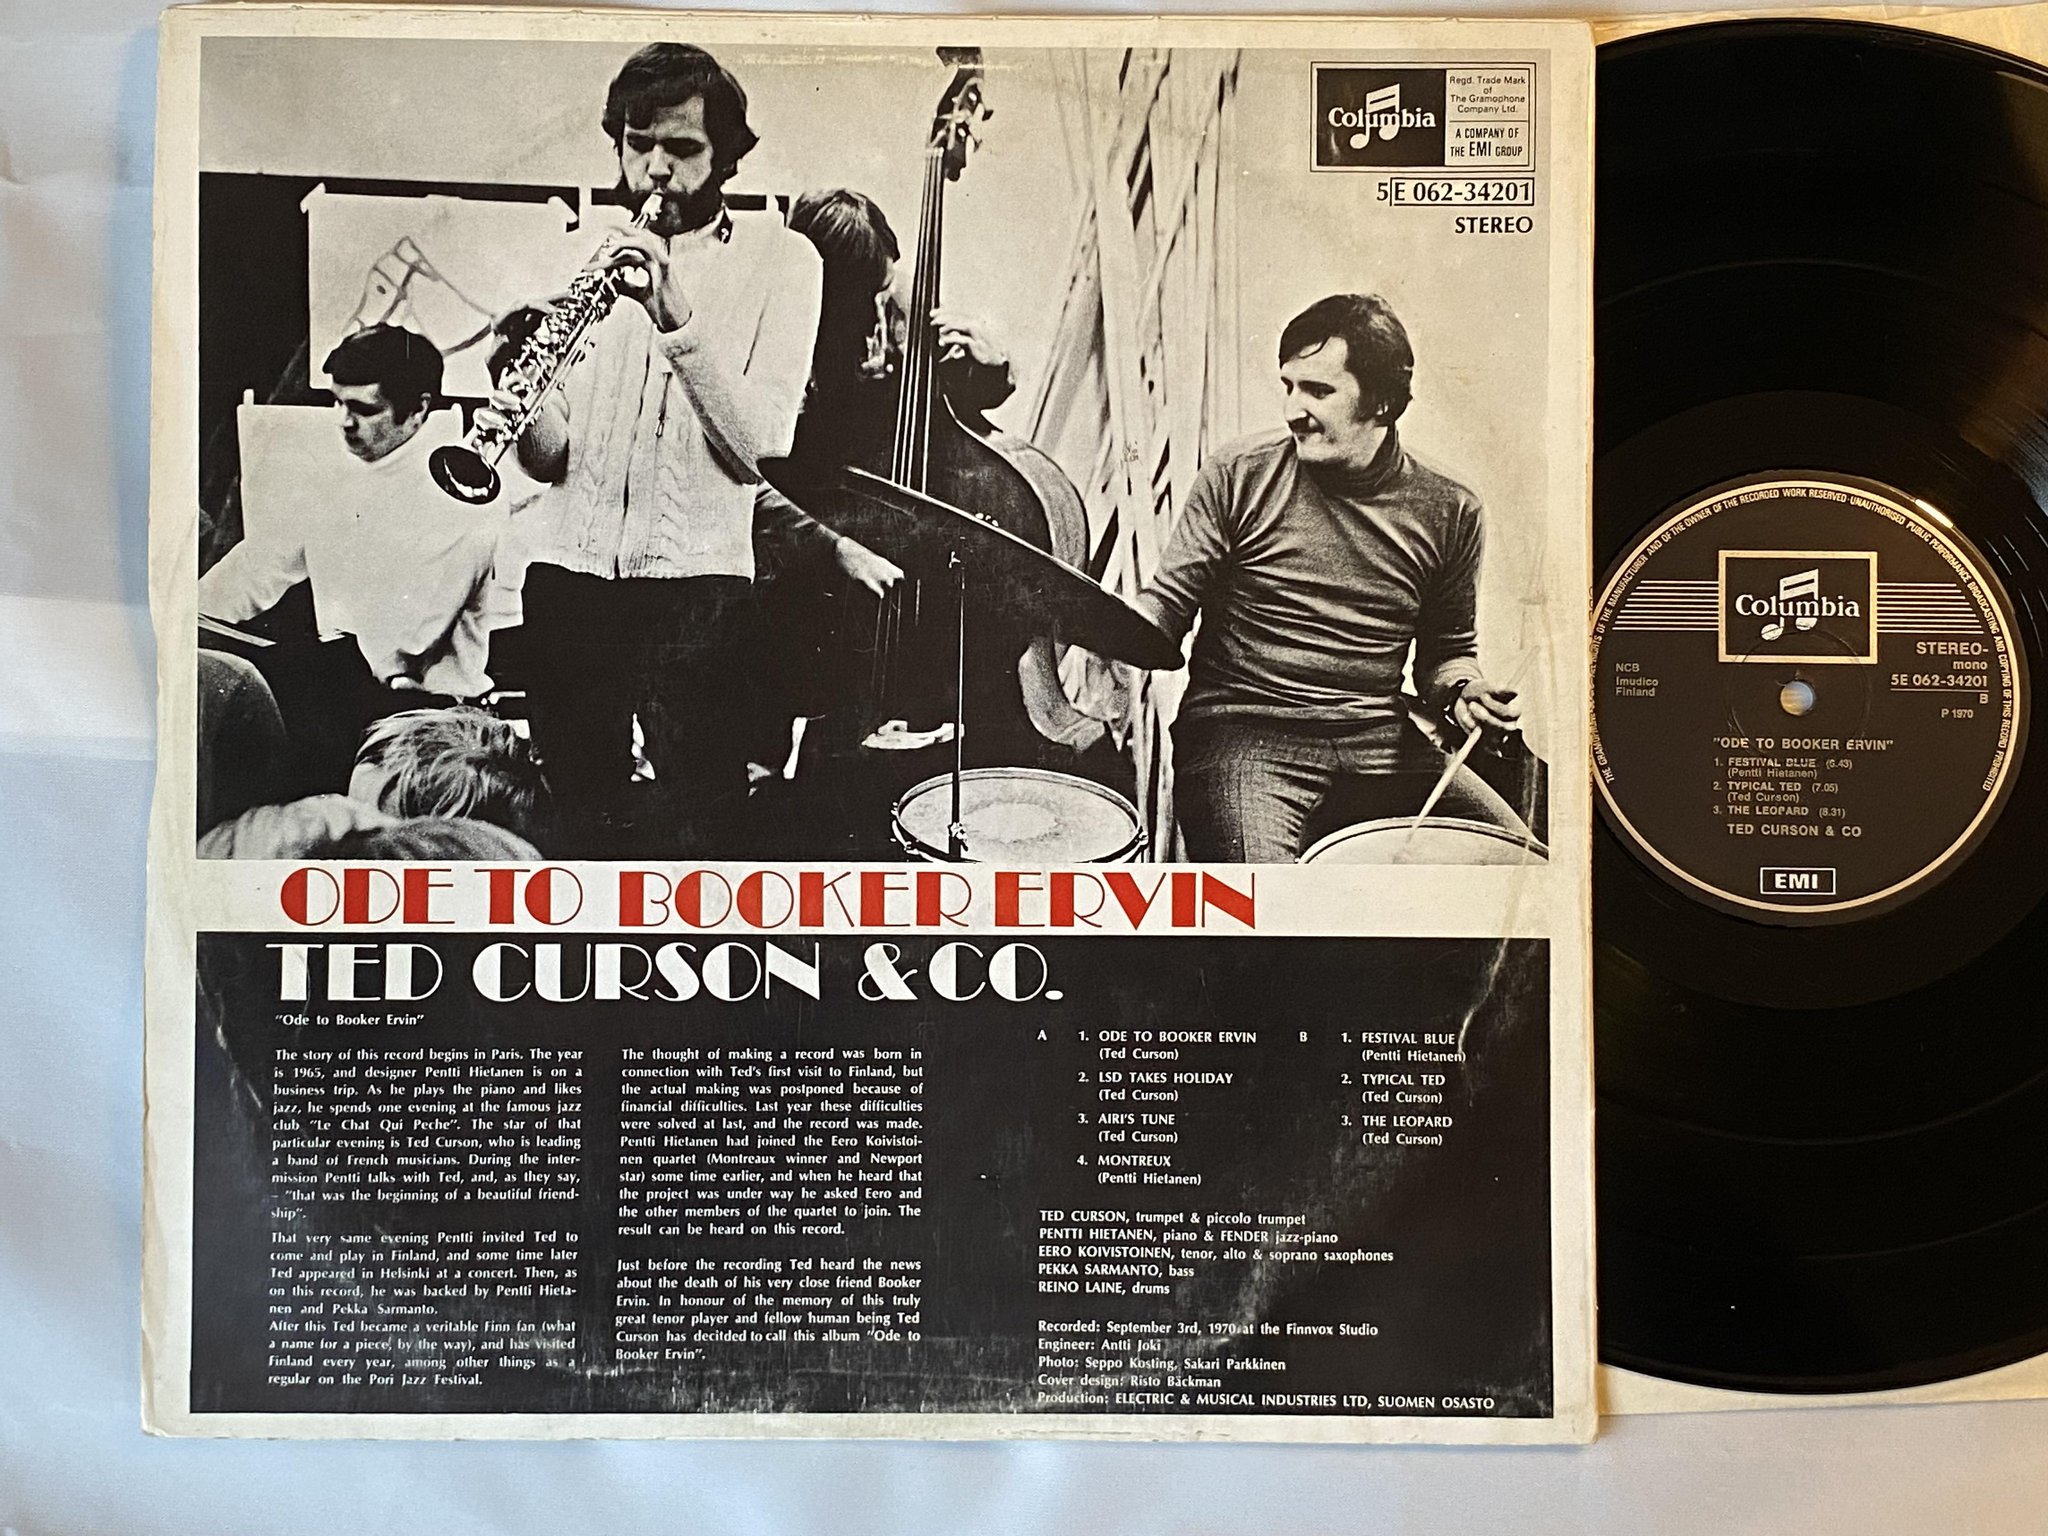 Omslagsbild för skivan TED CURSON & CO ode to Booker Ervin LP -70 Finland COLUMBIA *** SUPER RARE ***